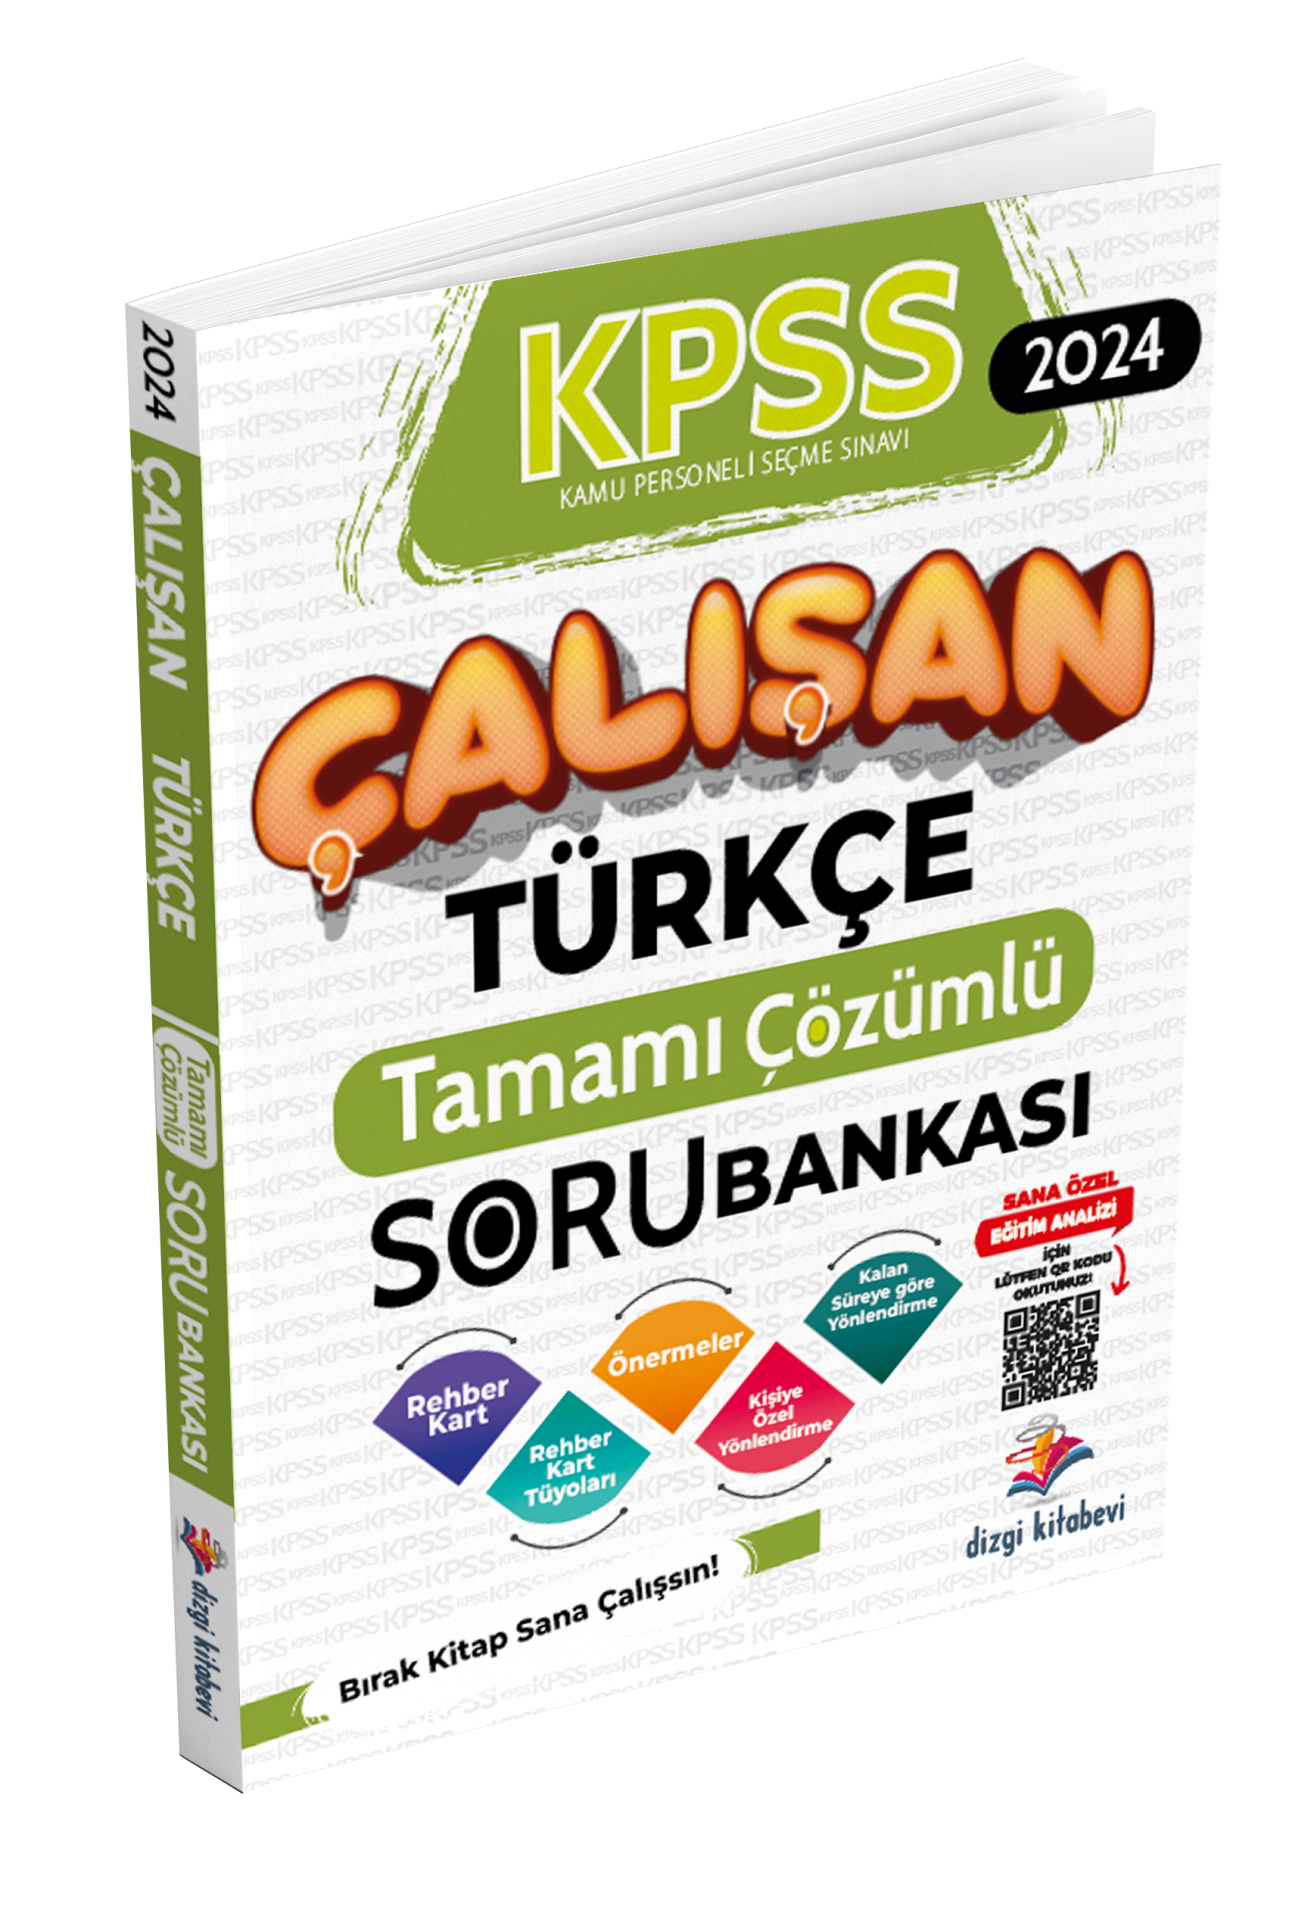 Dizgi Kitap Kpss Çalışan Türkçe Tamamı Çözümlü Soru Bankası 2024